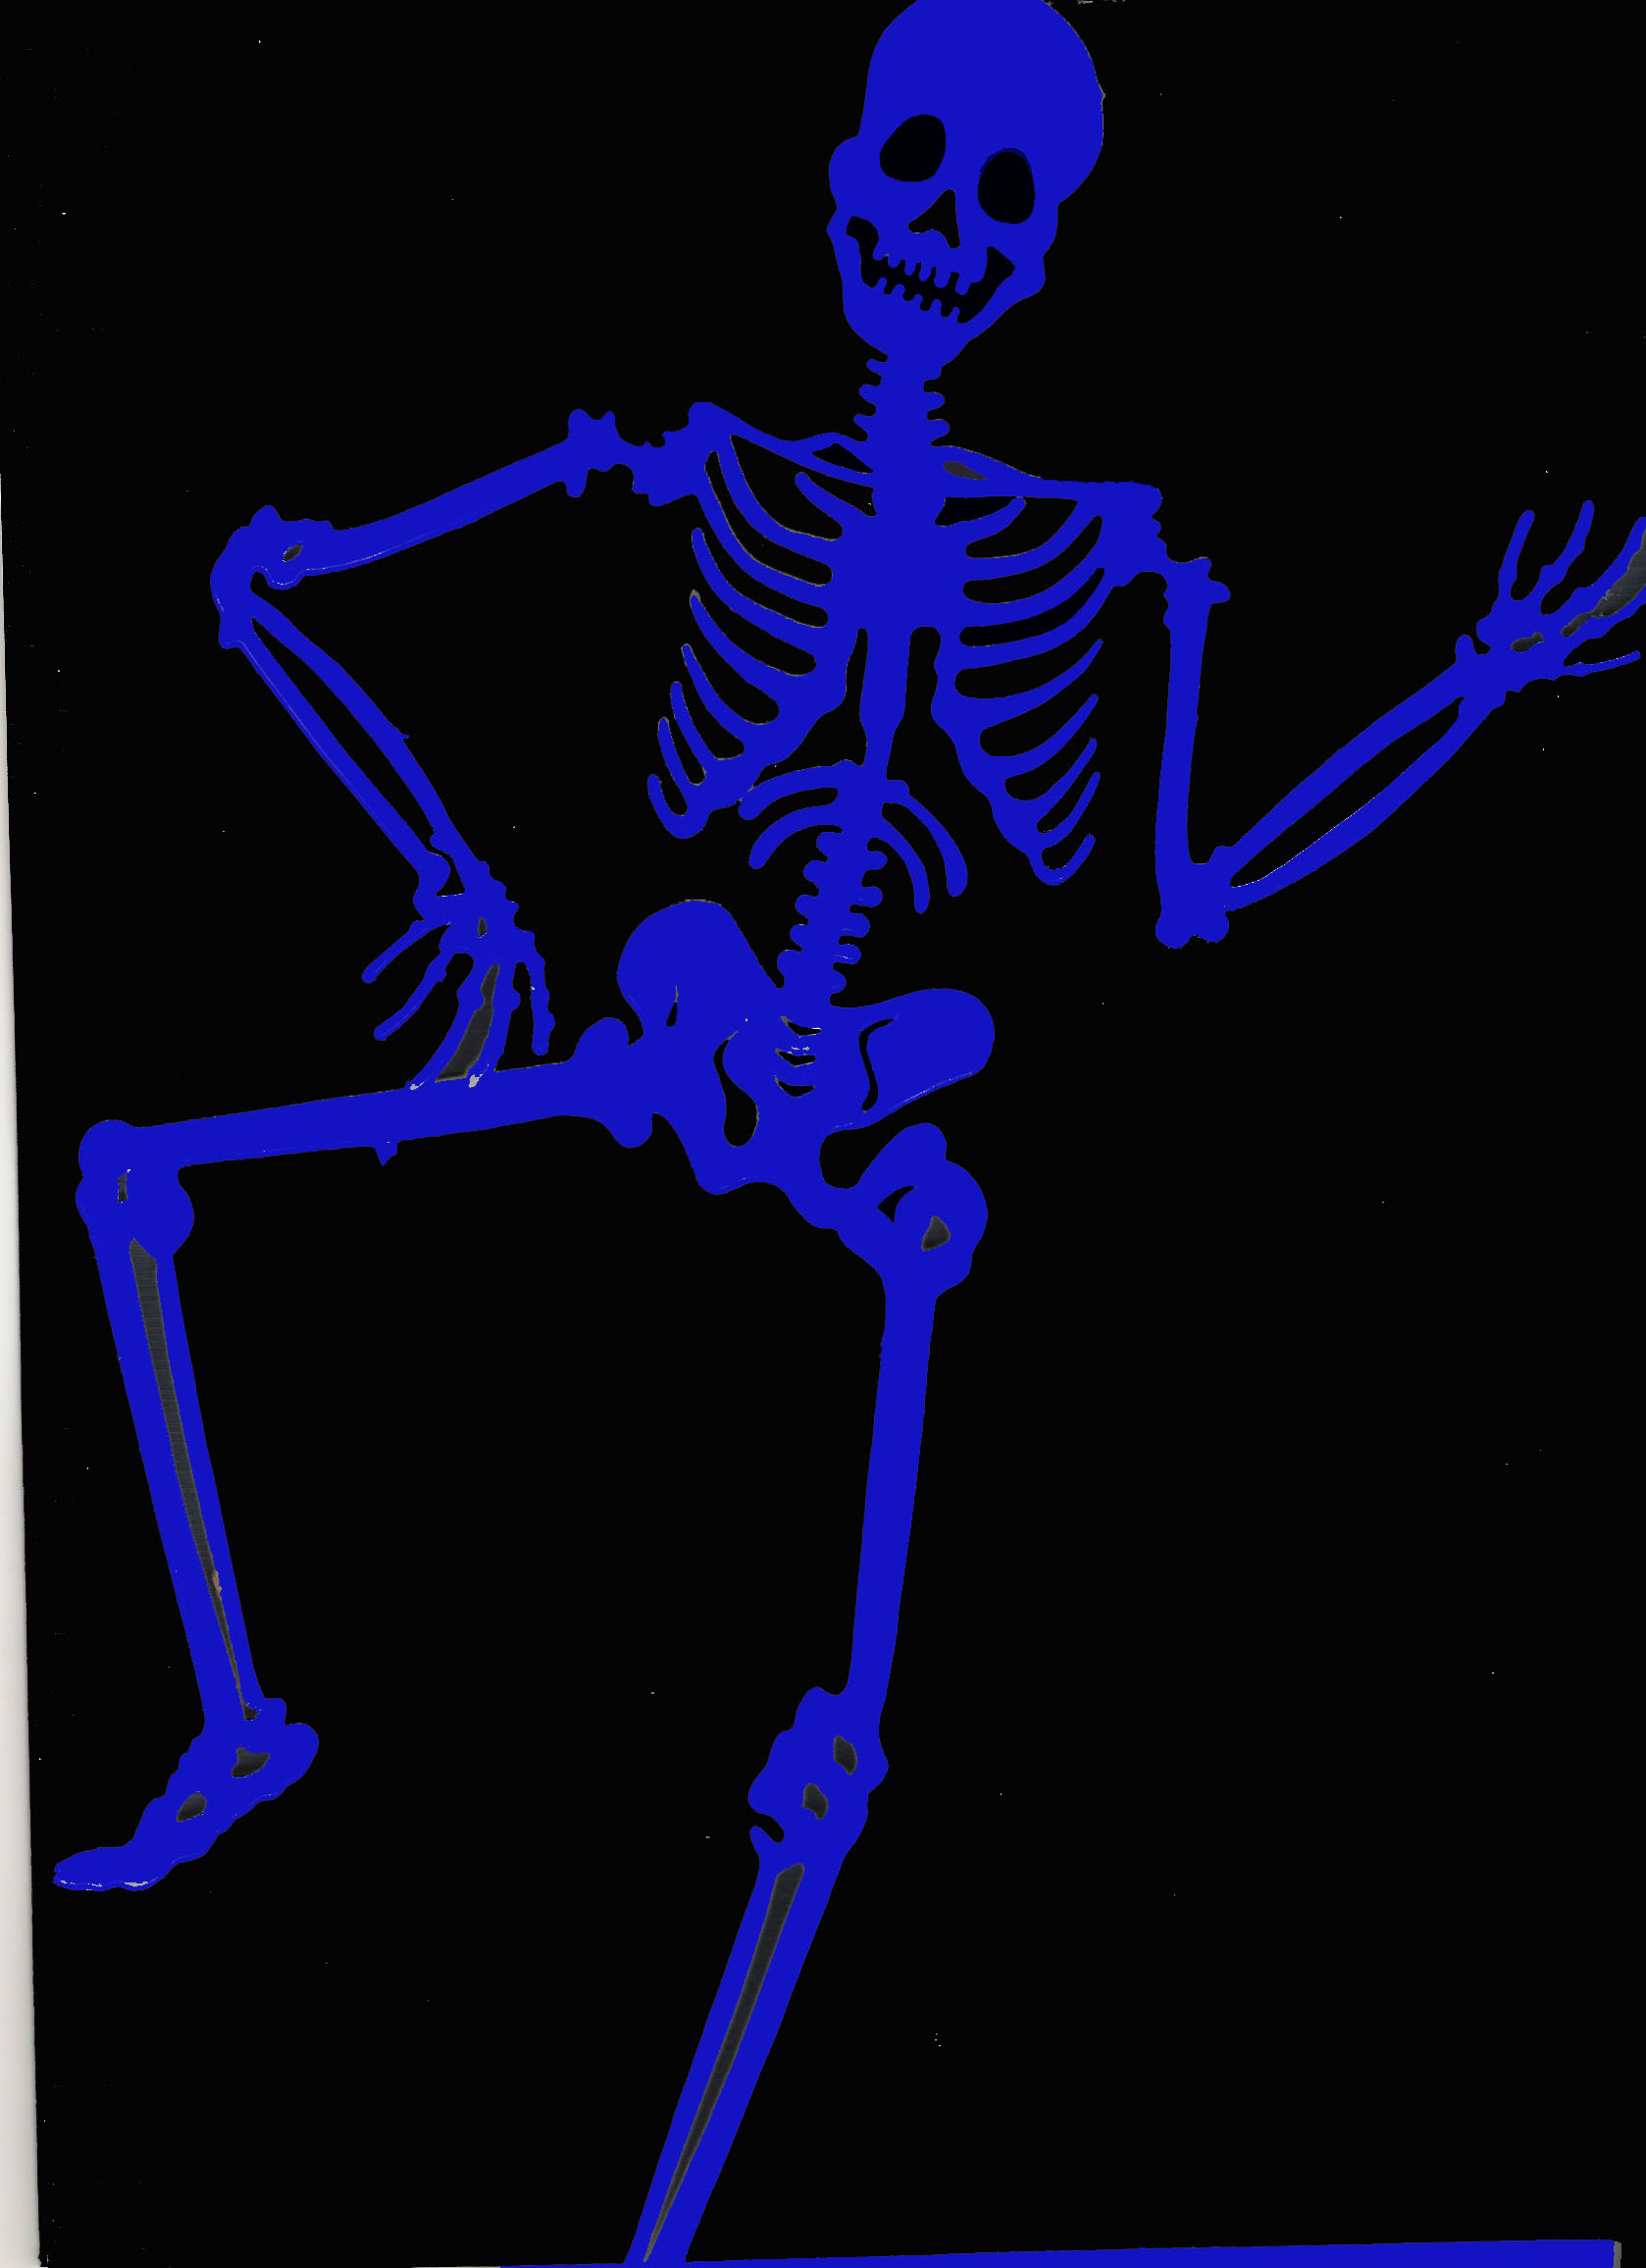 Skeleton | Free Images at Clker.com - vector clip art online, royalty